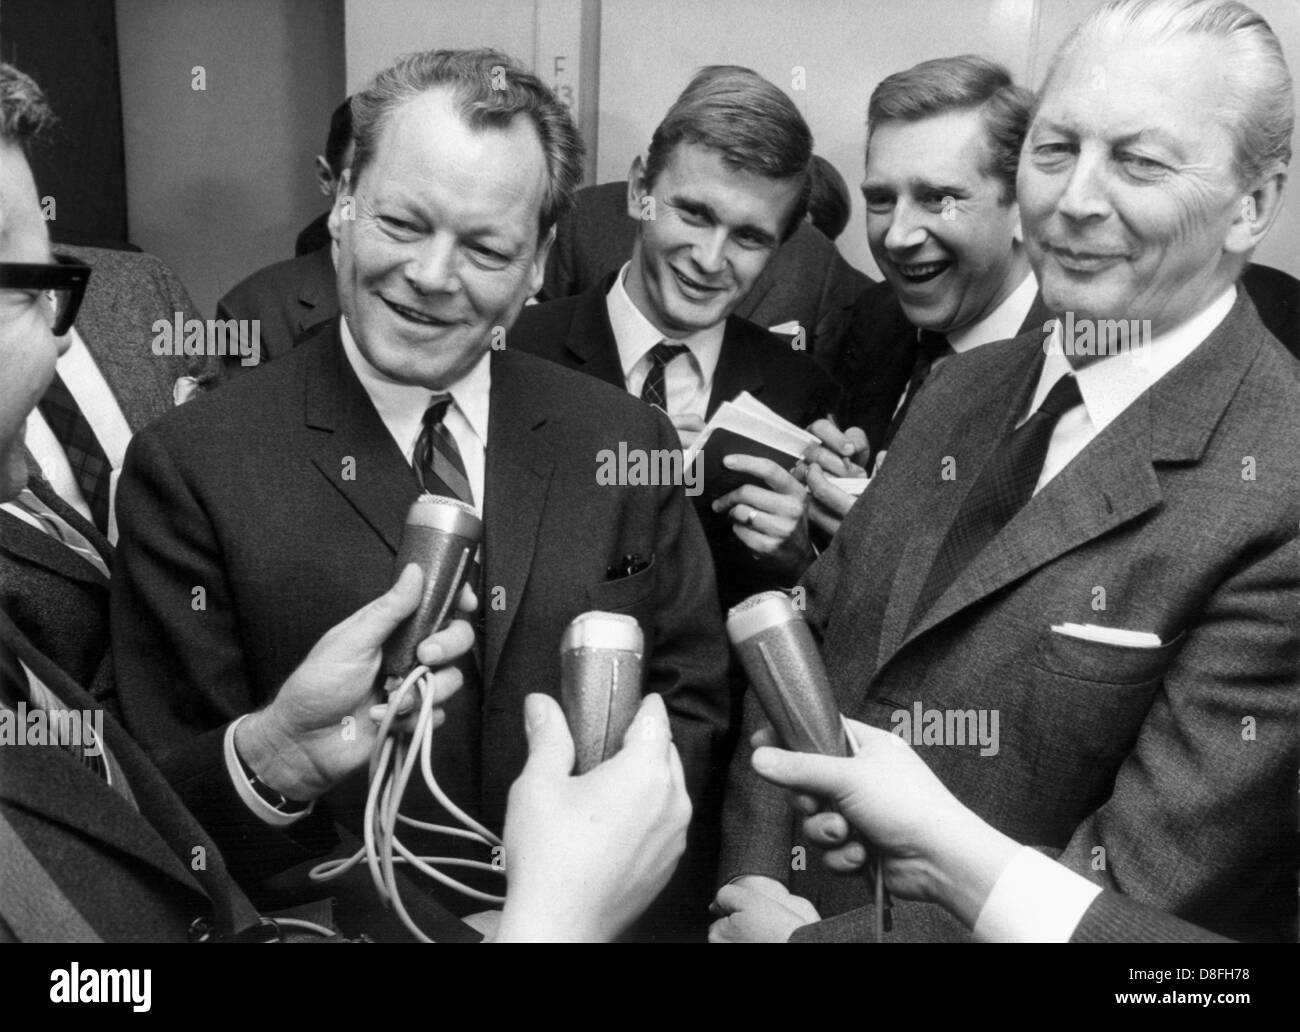 Vorsitzender des SPD Willy Brandt und Kanzler Kandidaten der CDU Kurt Georg Kiesinger Antwort Fragen von Journalisten über ihre Gespräche über eine mögliche große Koalition am 24. November 1966. Kabinett Kiesinger wurde am 1. Dezember 1966, vereidigt bestehend aus einer großen Koalition aus CDU/CSU und SPD. Stockfoto